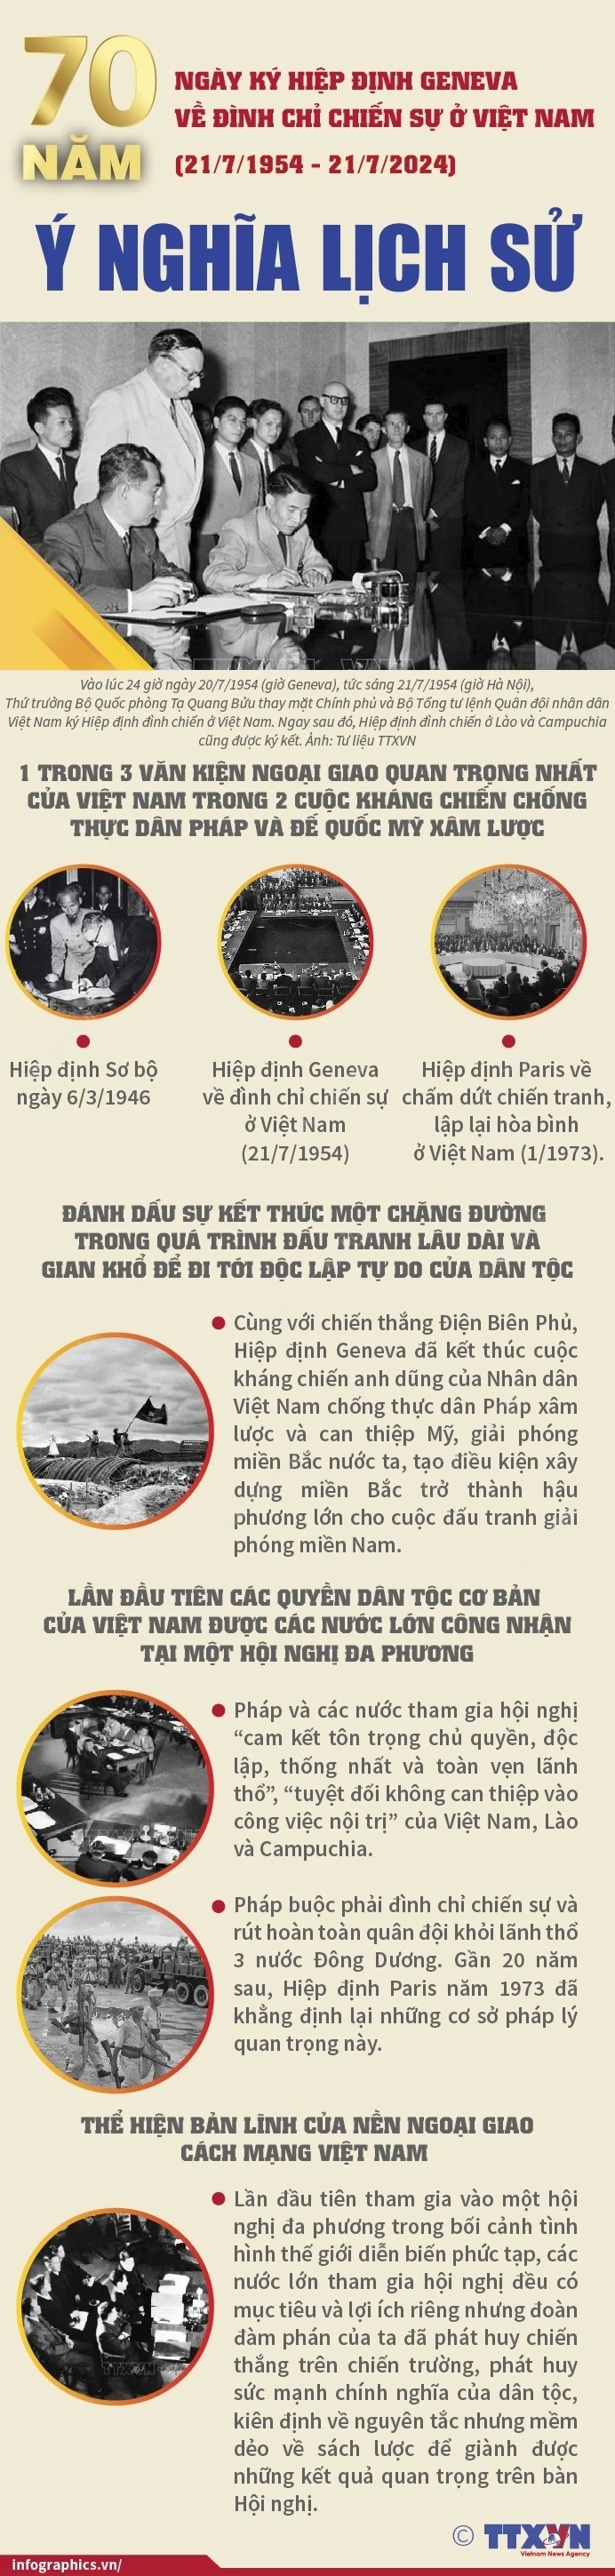 Ý nghĩa lịch sử của Hiệp định Geneva về đình chỉ chiến sự ở Việt Nam - Ảnh 1